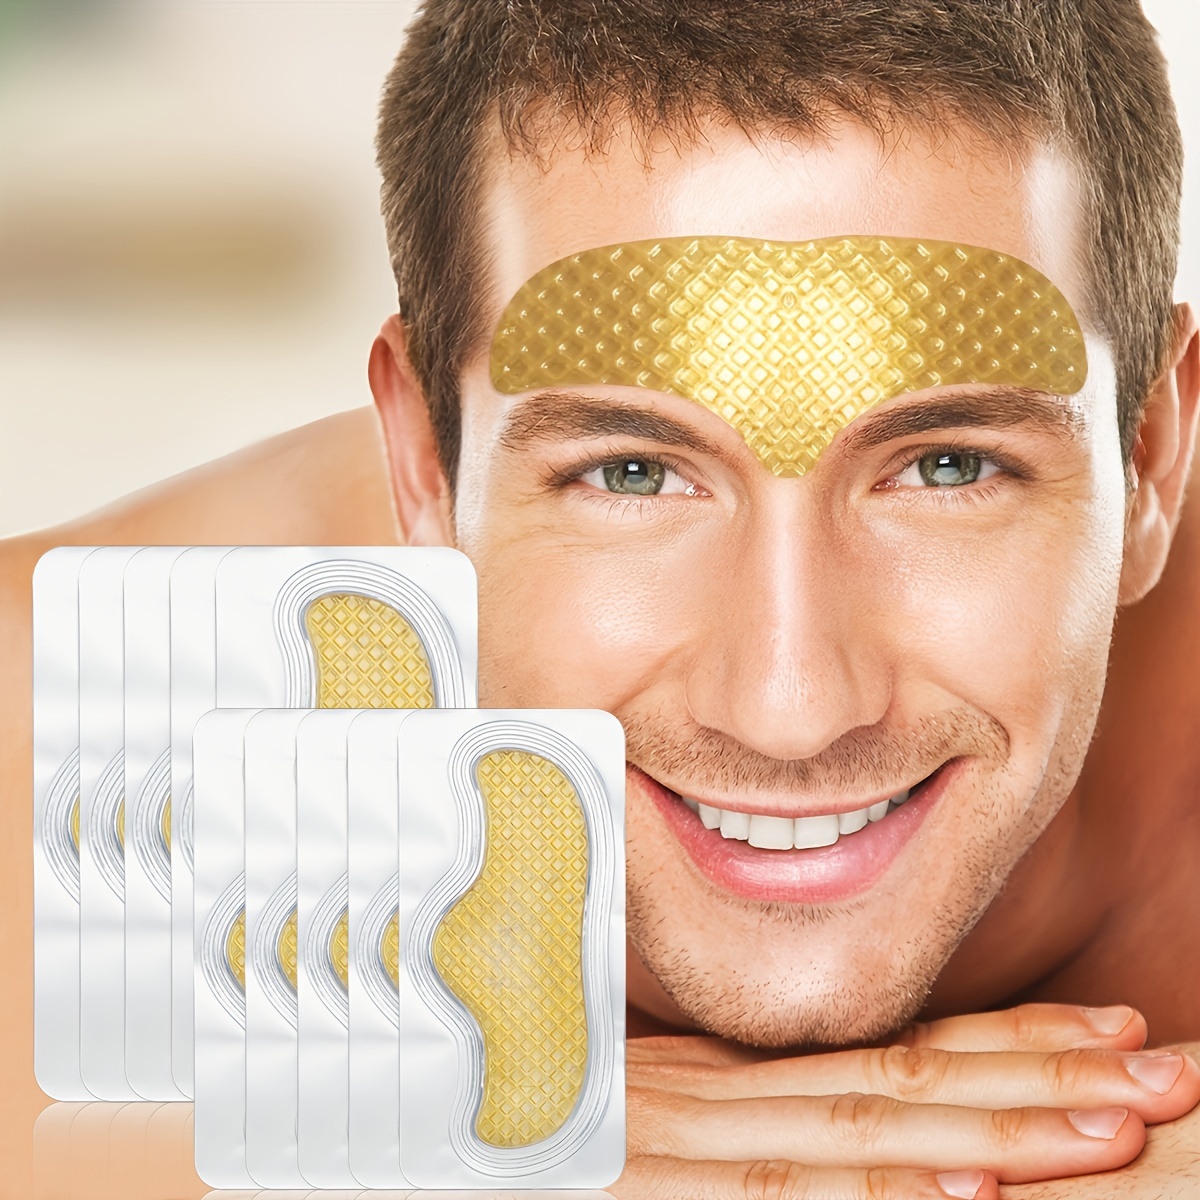 

Masque frontal en or au collagène, hydratant et nourrissant, spécialement conçu pour lifter les lignes du front, les ridules du visage, pour raffermir et votre peau.